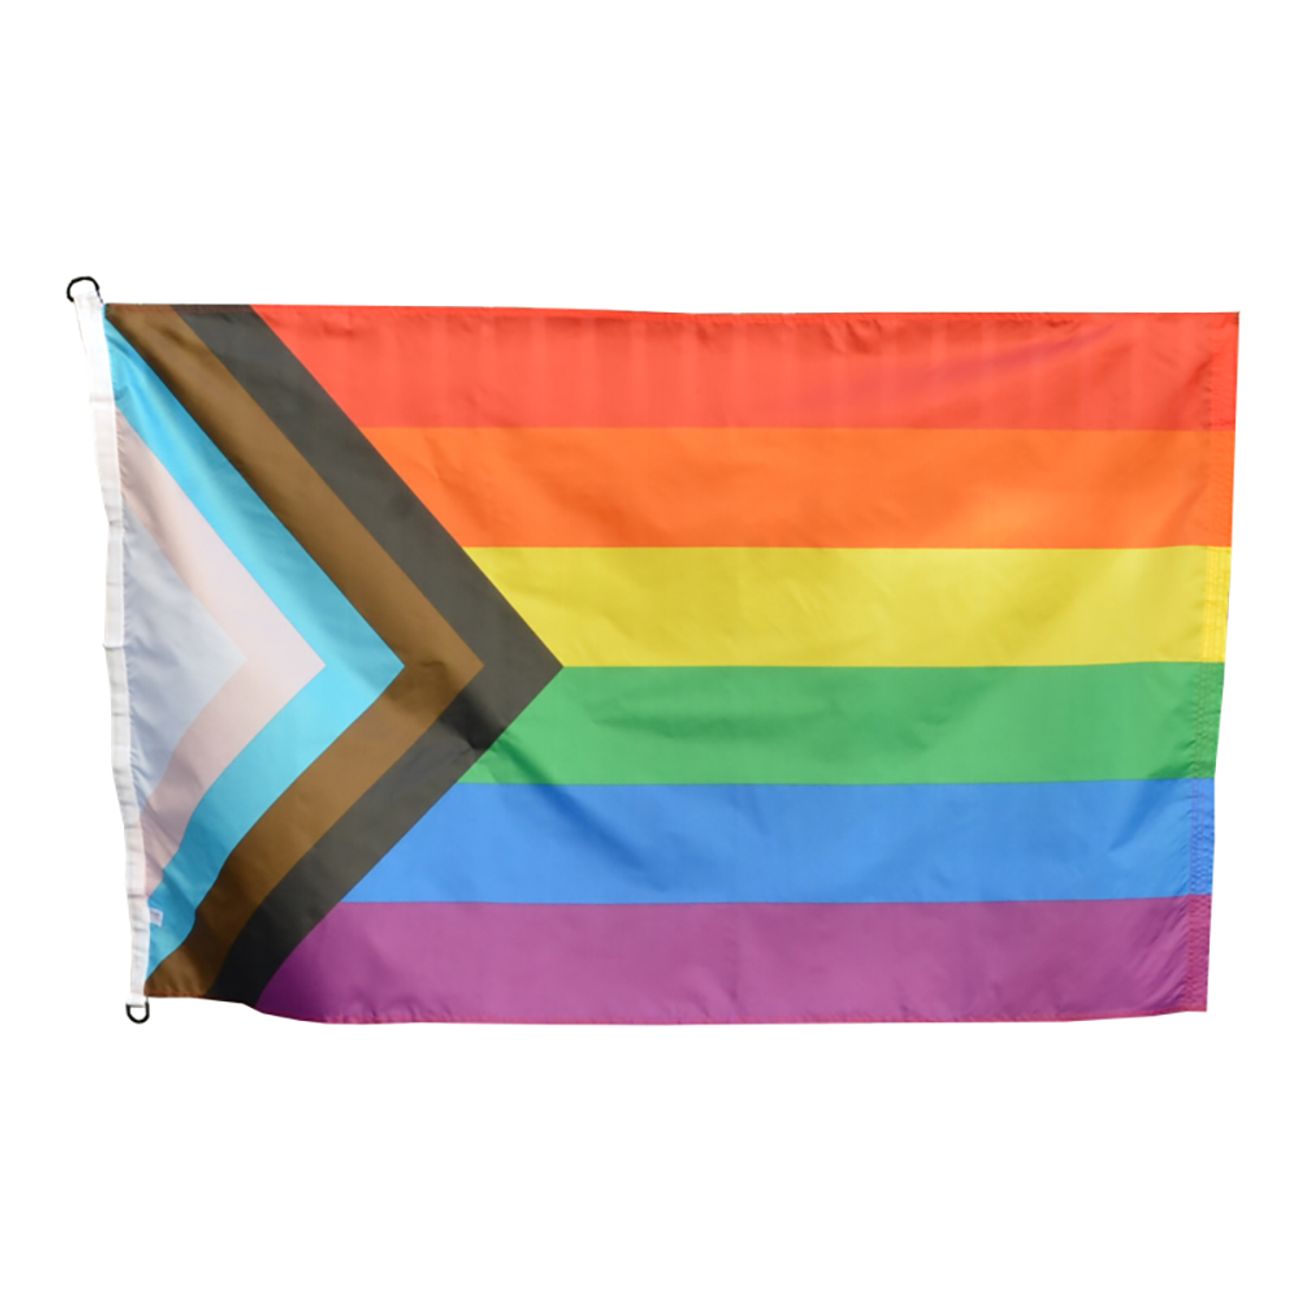 flagga-progress-pride-med-d-ogla-85767-1